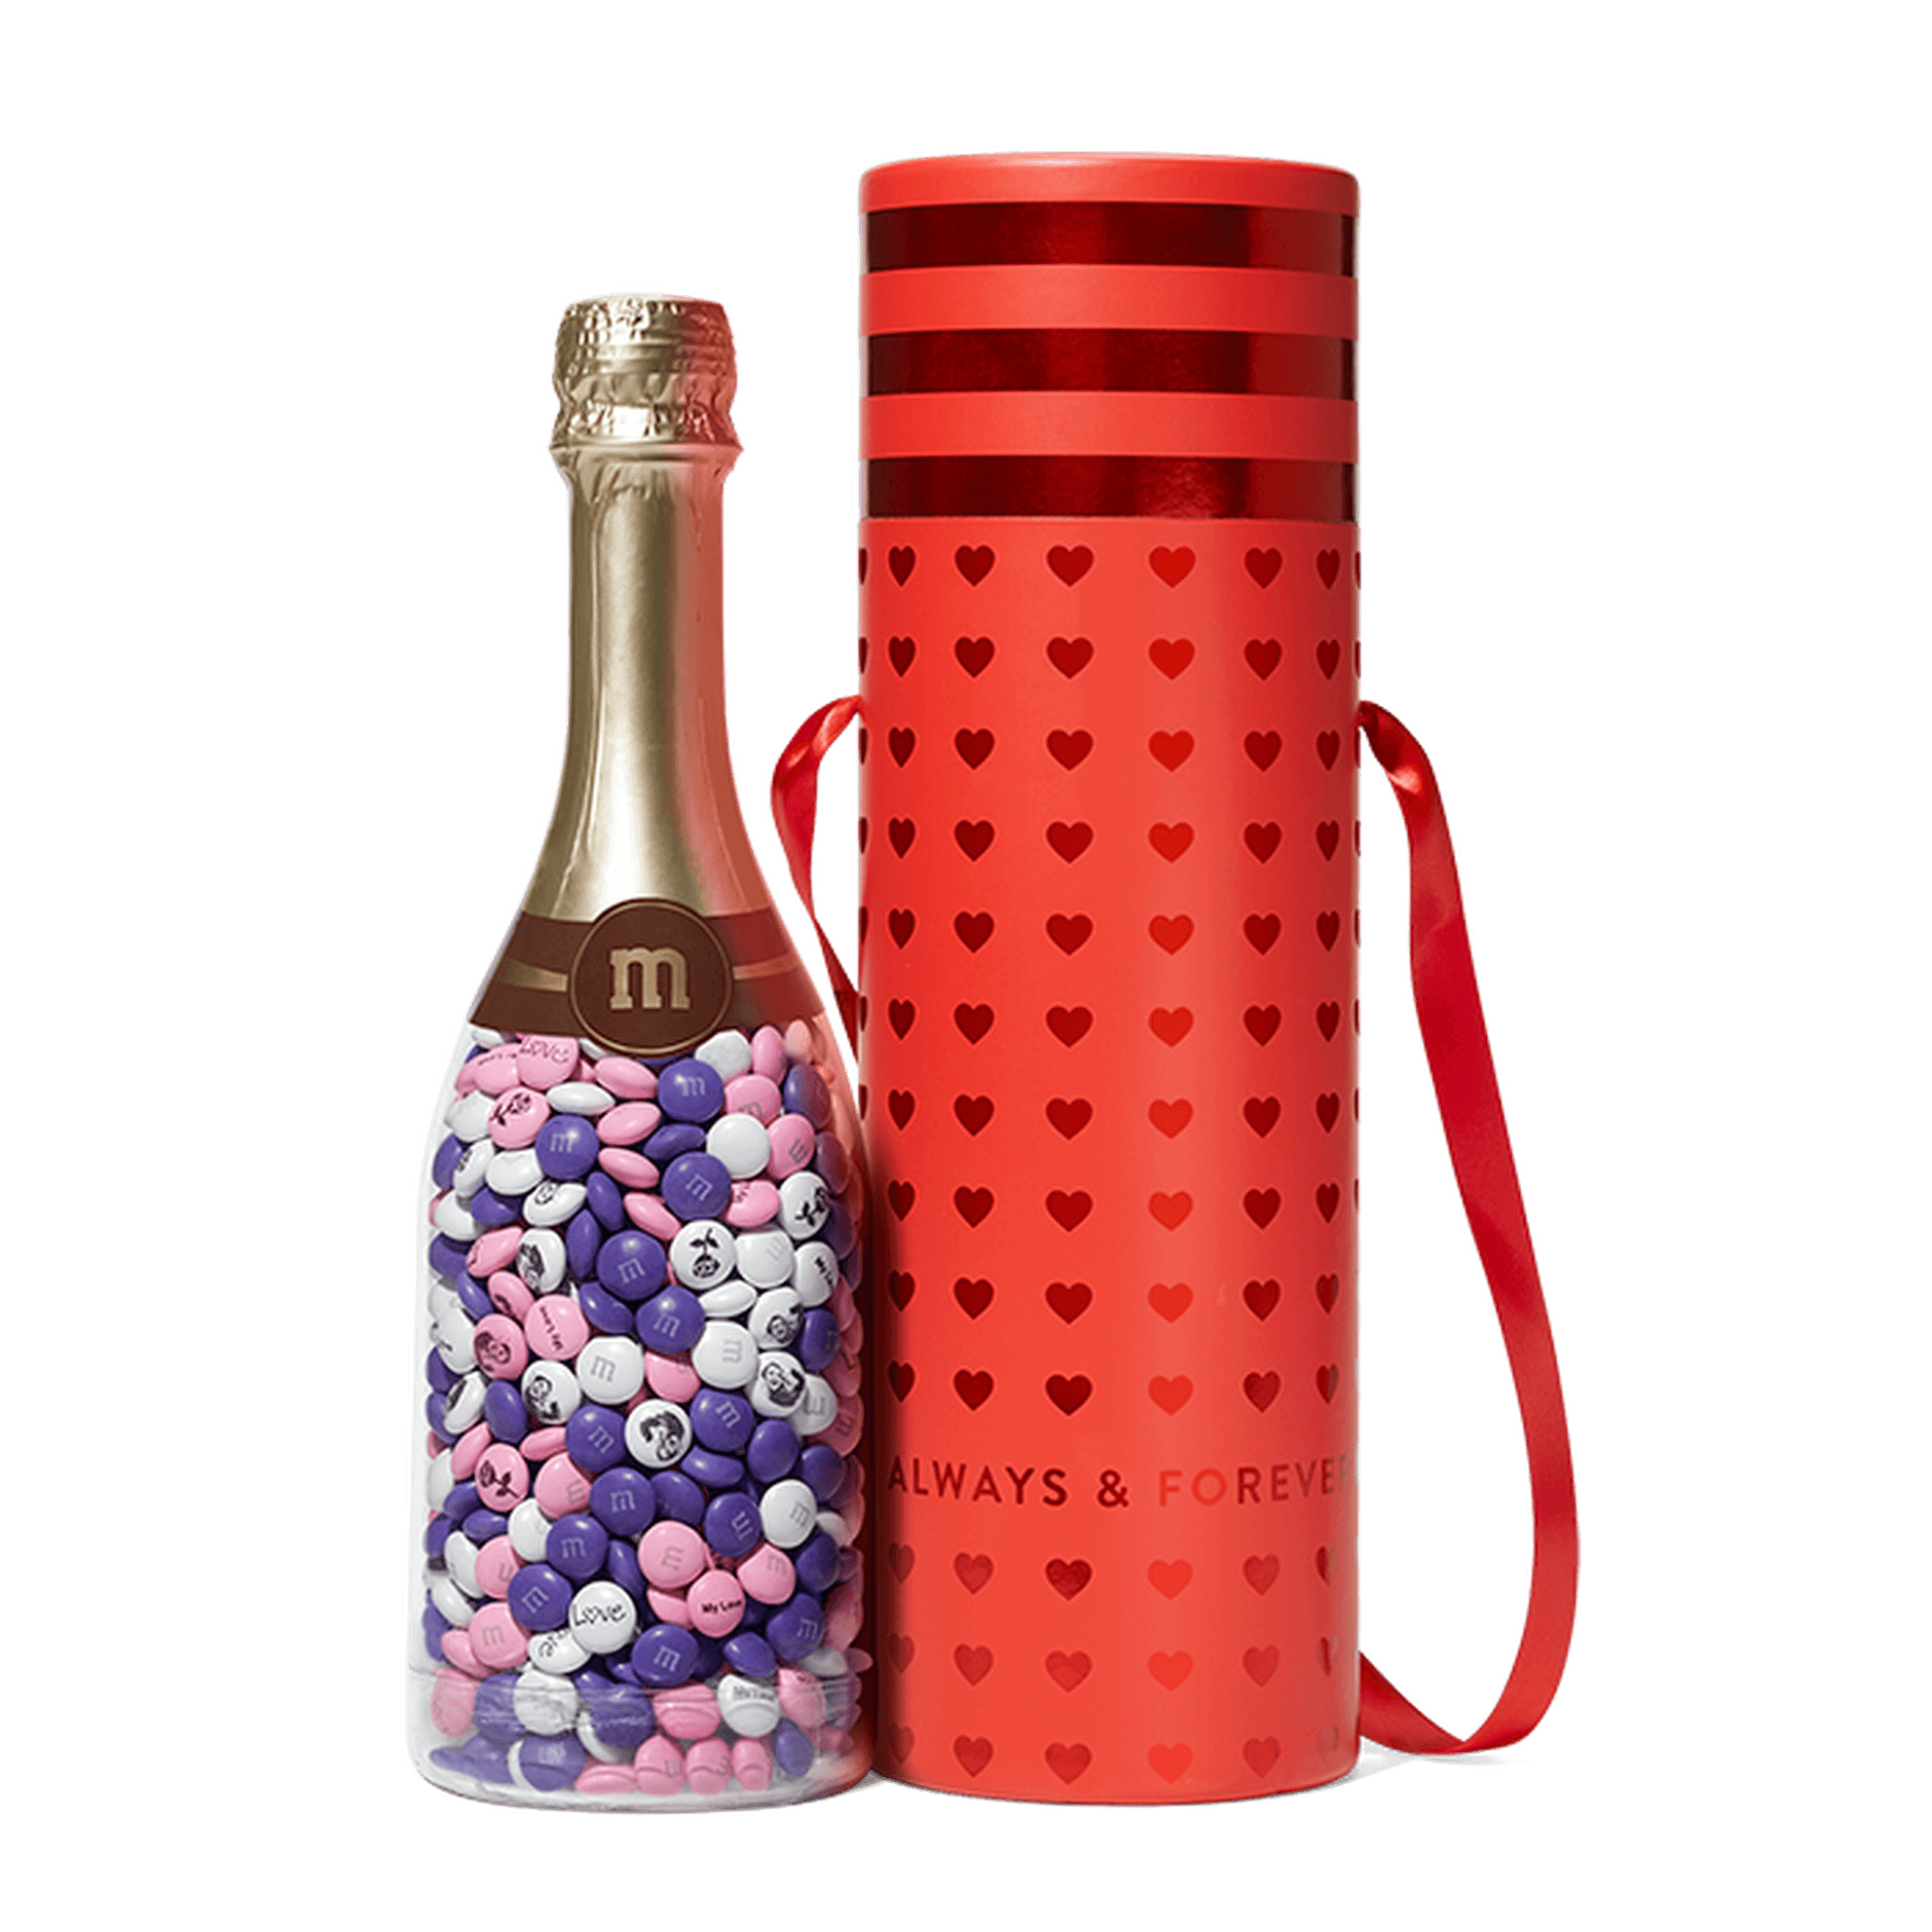 M&Ms Always & Forever Gift Bottle